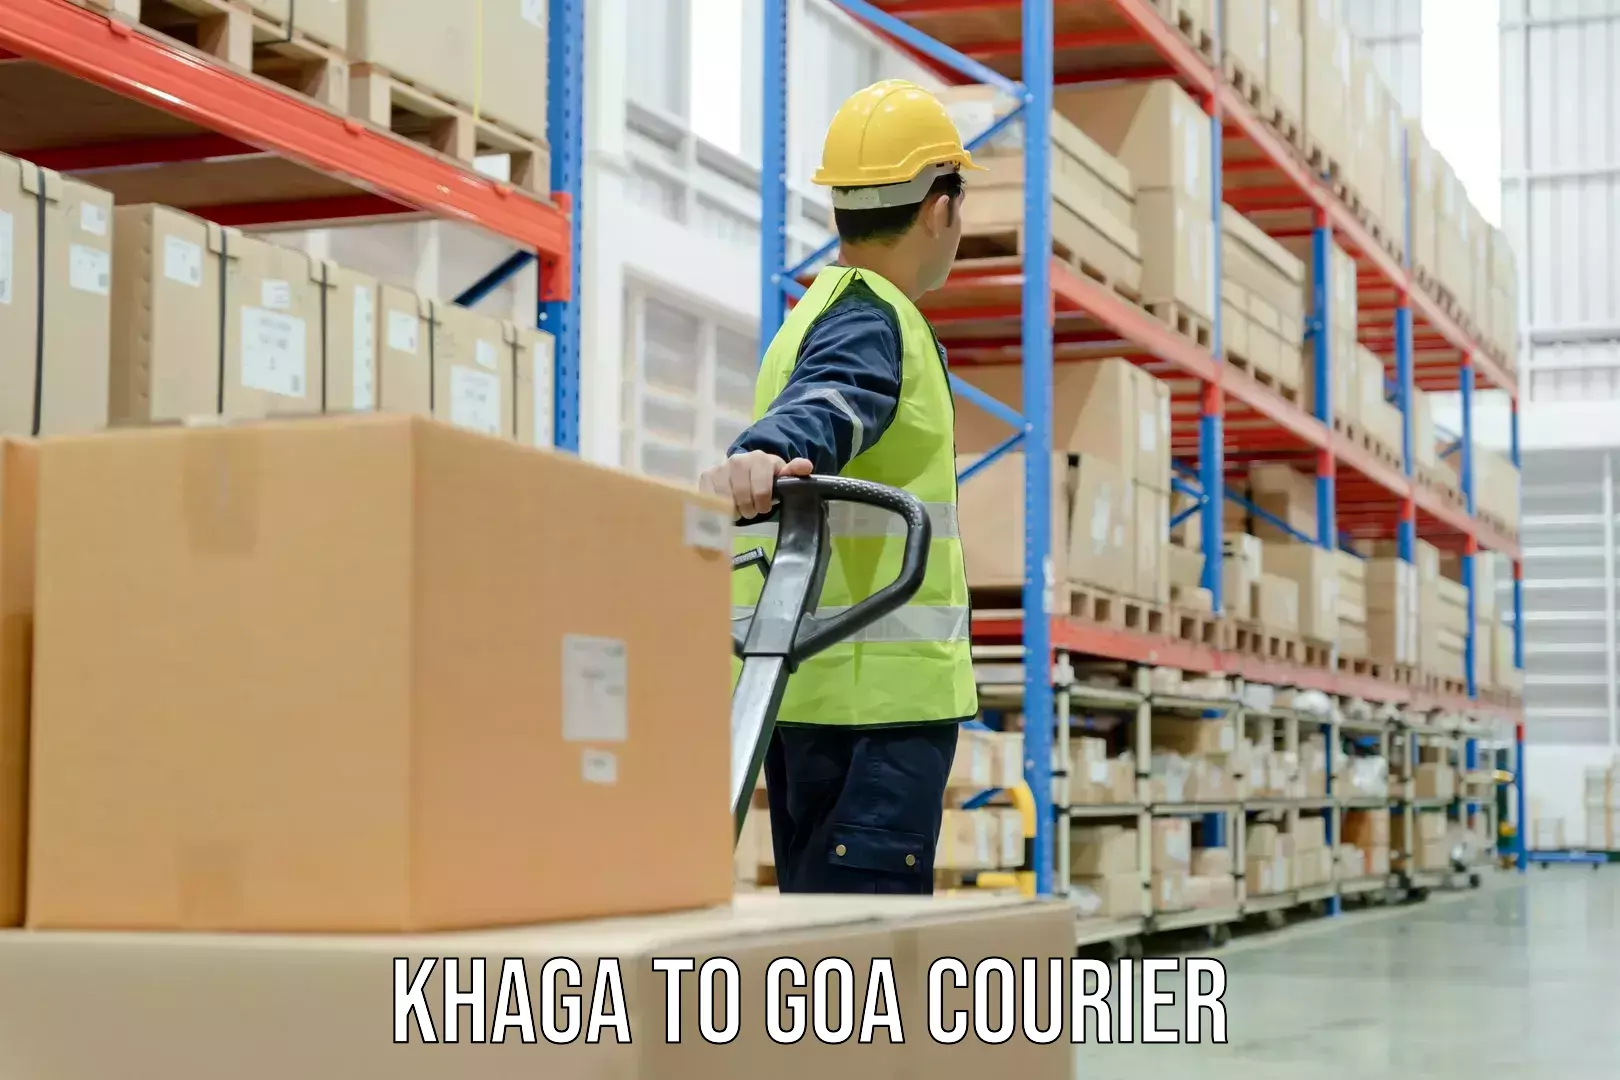 Reliable courier services Khaga to Ponda